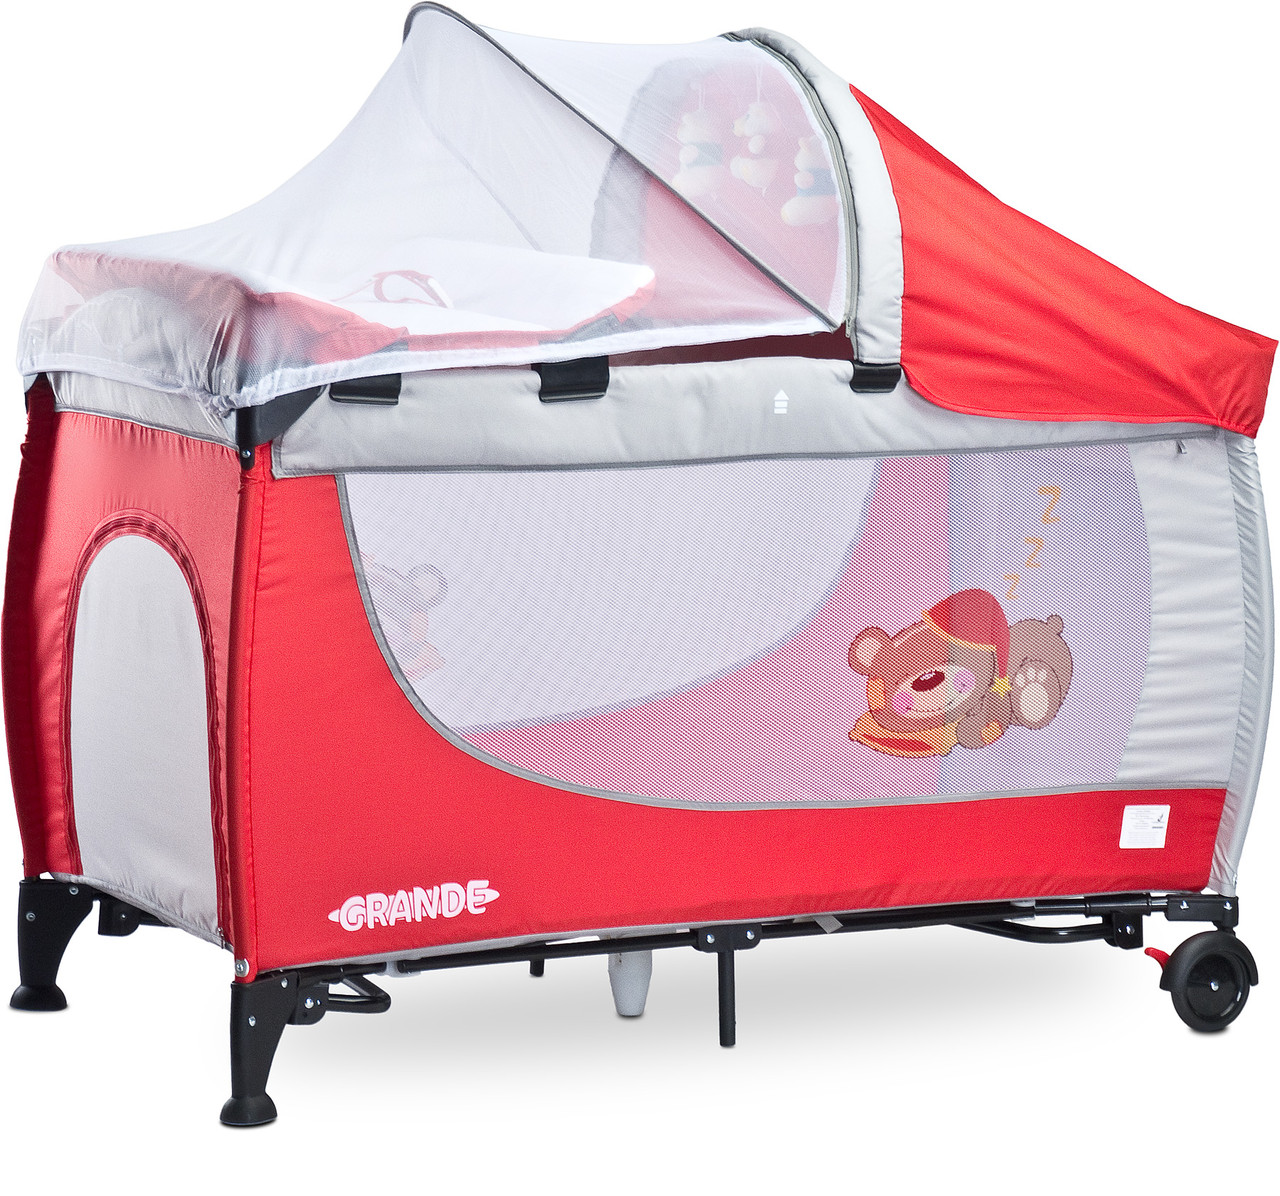 Дитяче ліжко манеж Caretero Grande 2016 Red